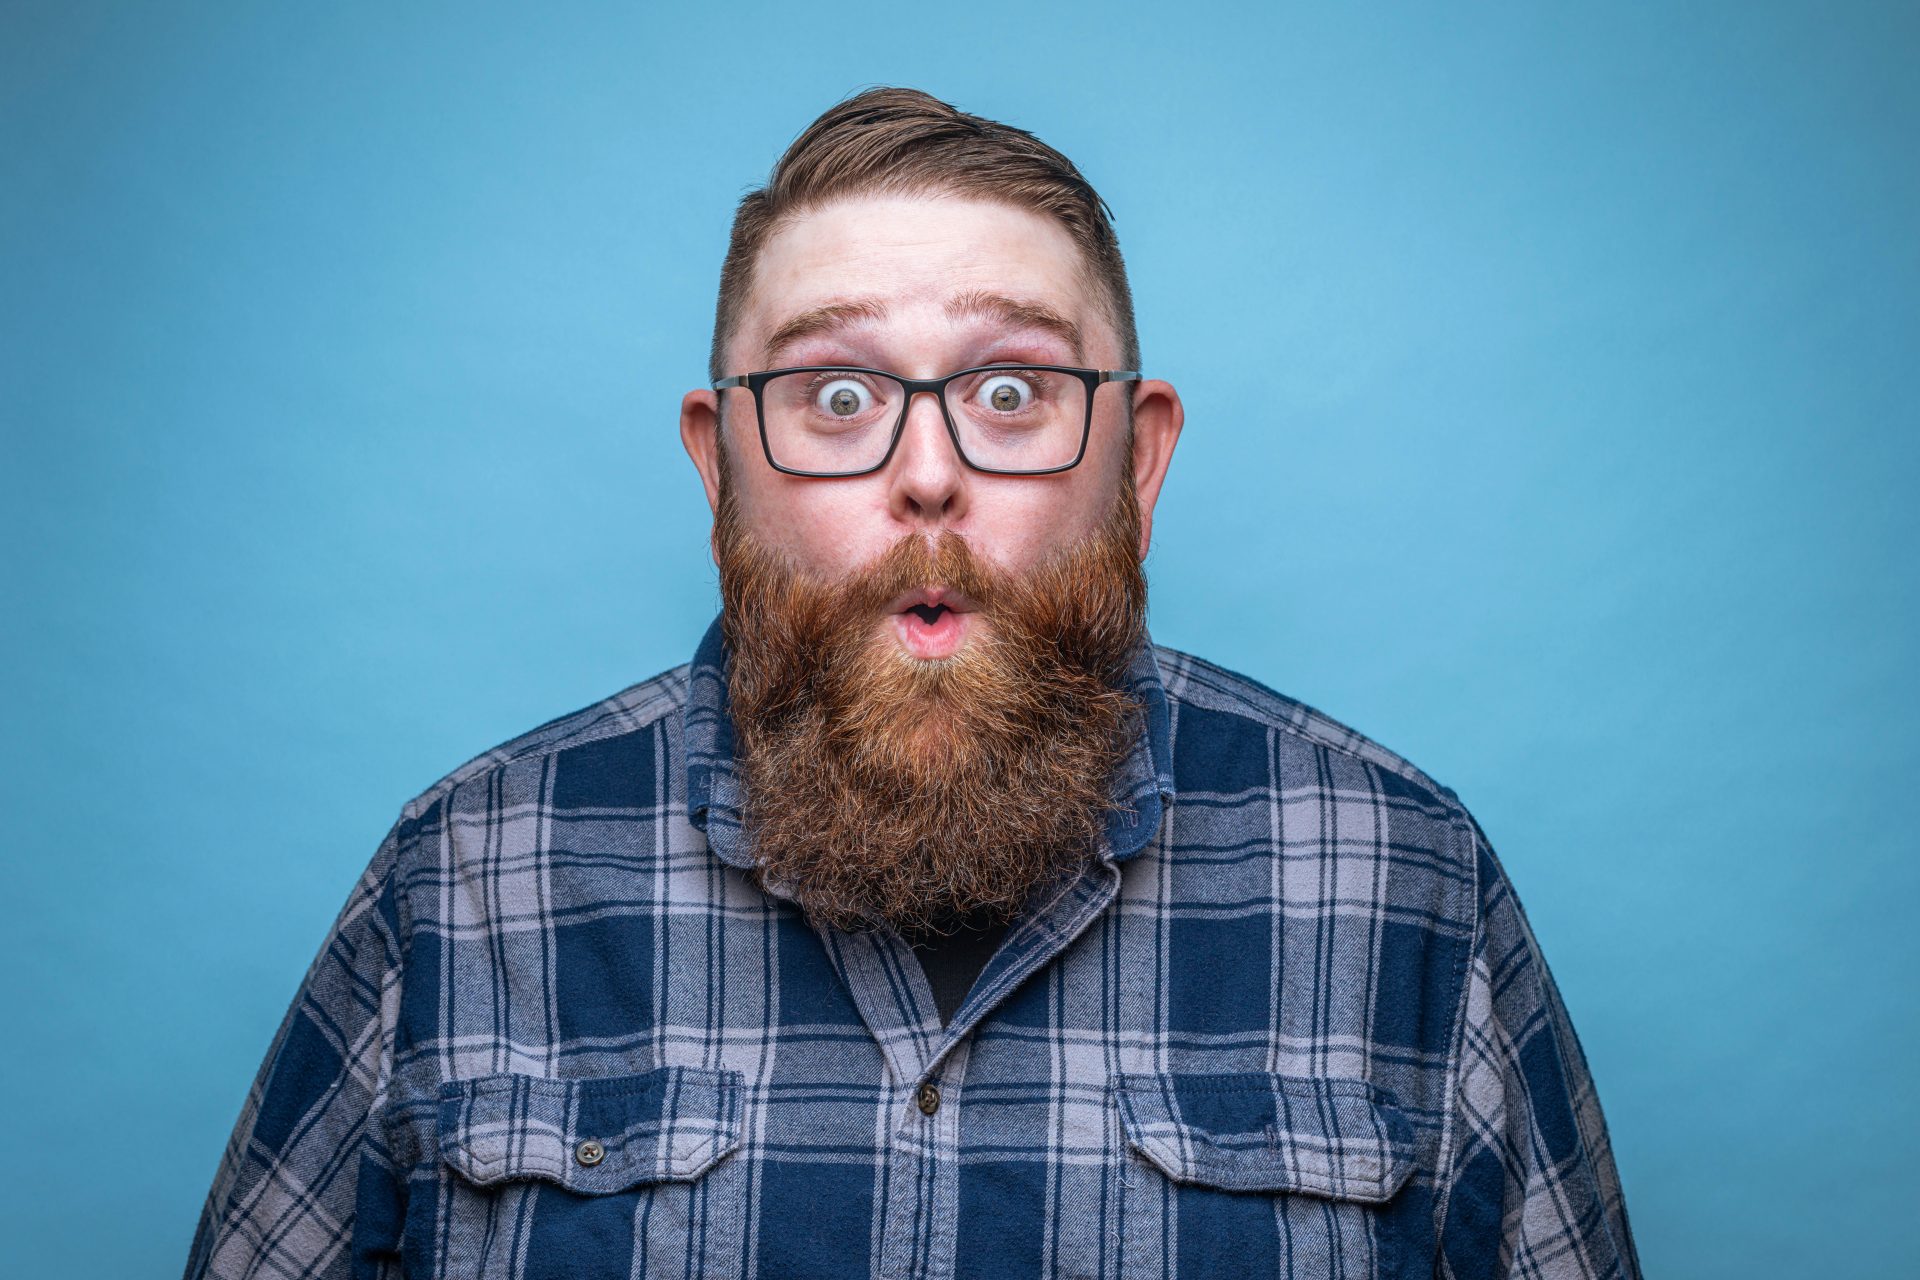 Ipotesi: gli esseri umani hanno sviluppato la barba per proteggere i volti dai pugni